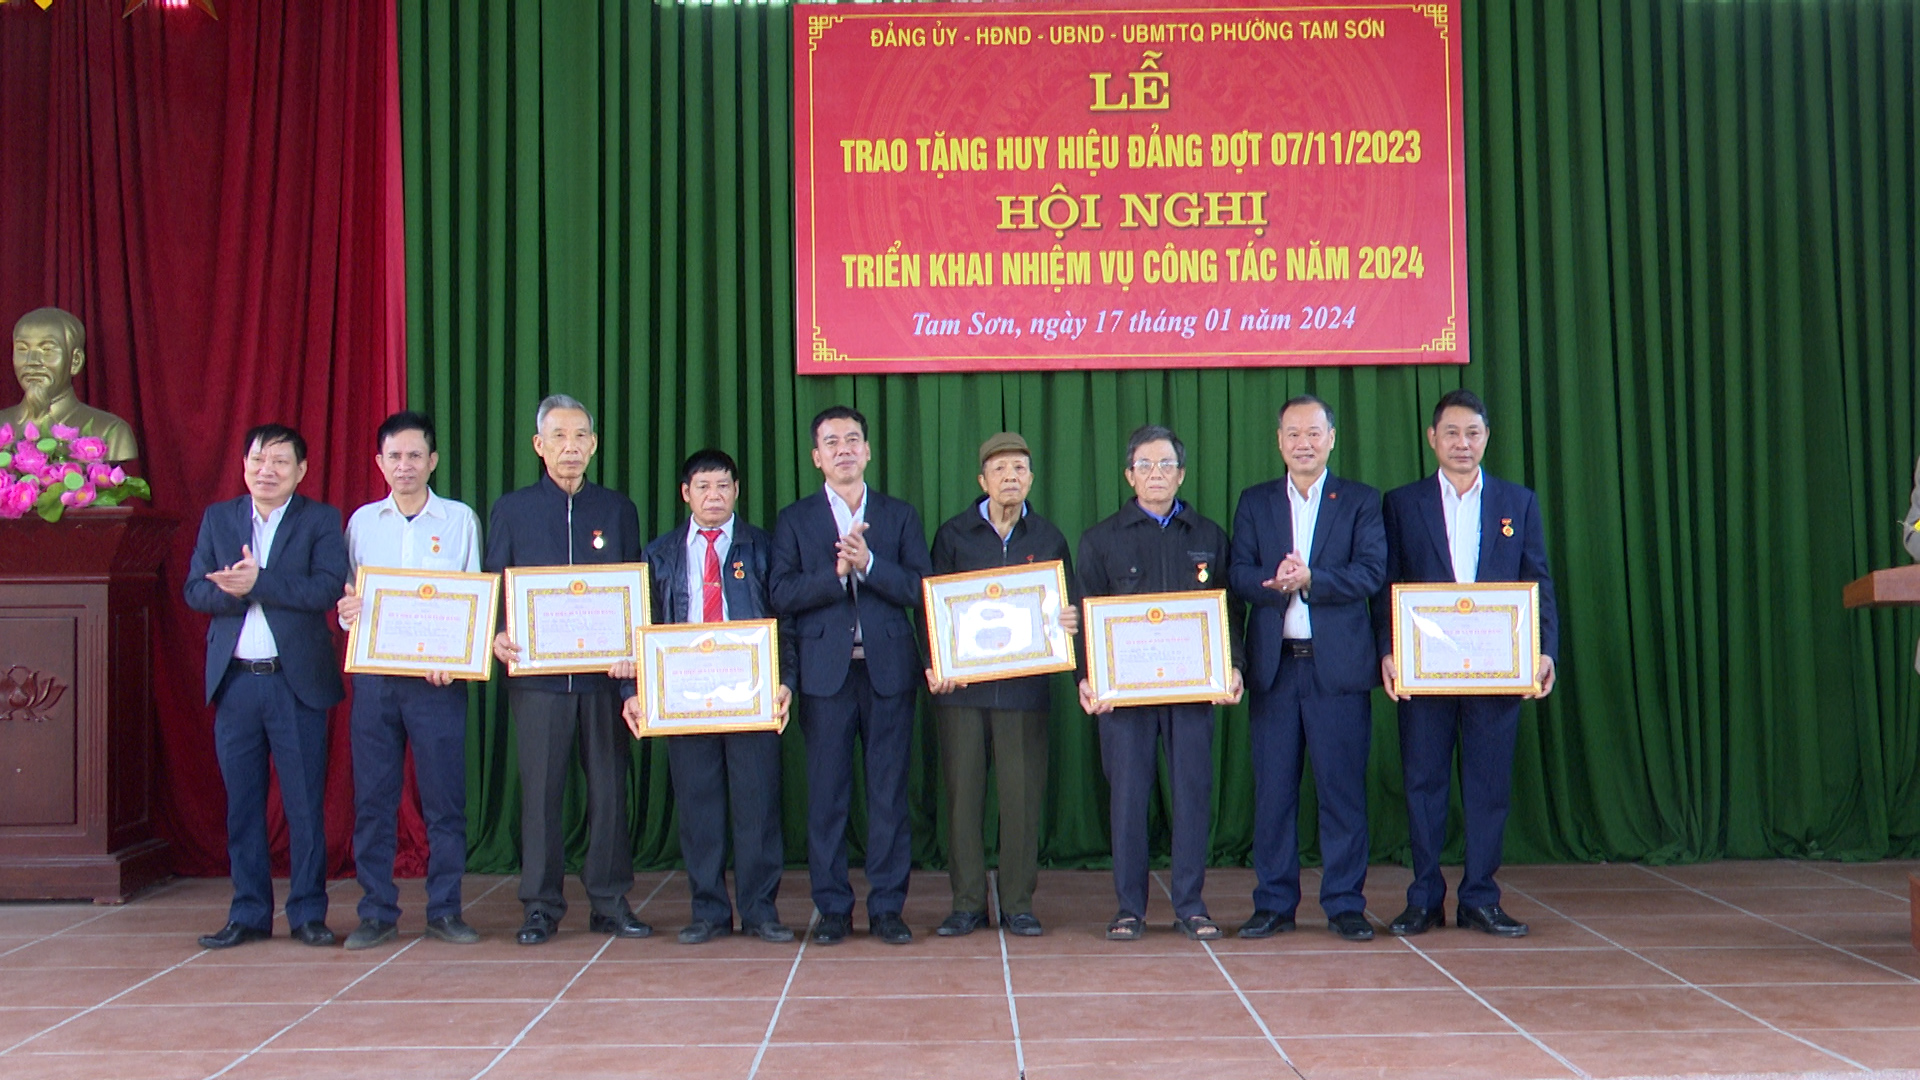 Đảng bộ phường Tam Sơn trao tặng huy hiệu Đảng và triển khai nhiệm vụ năm 2024